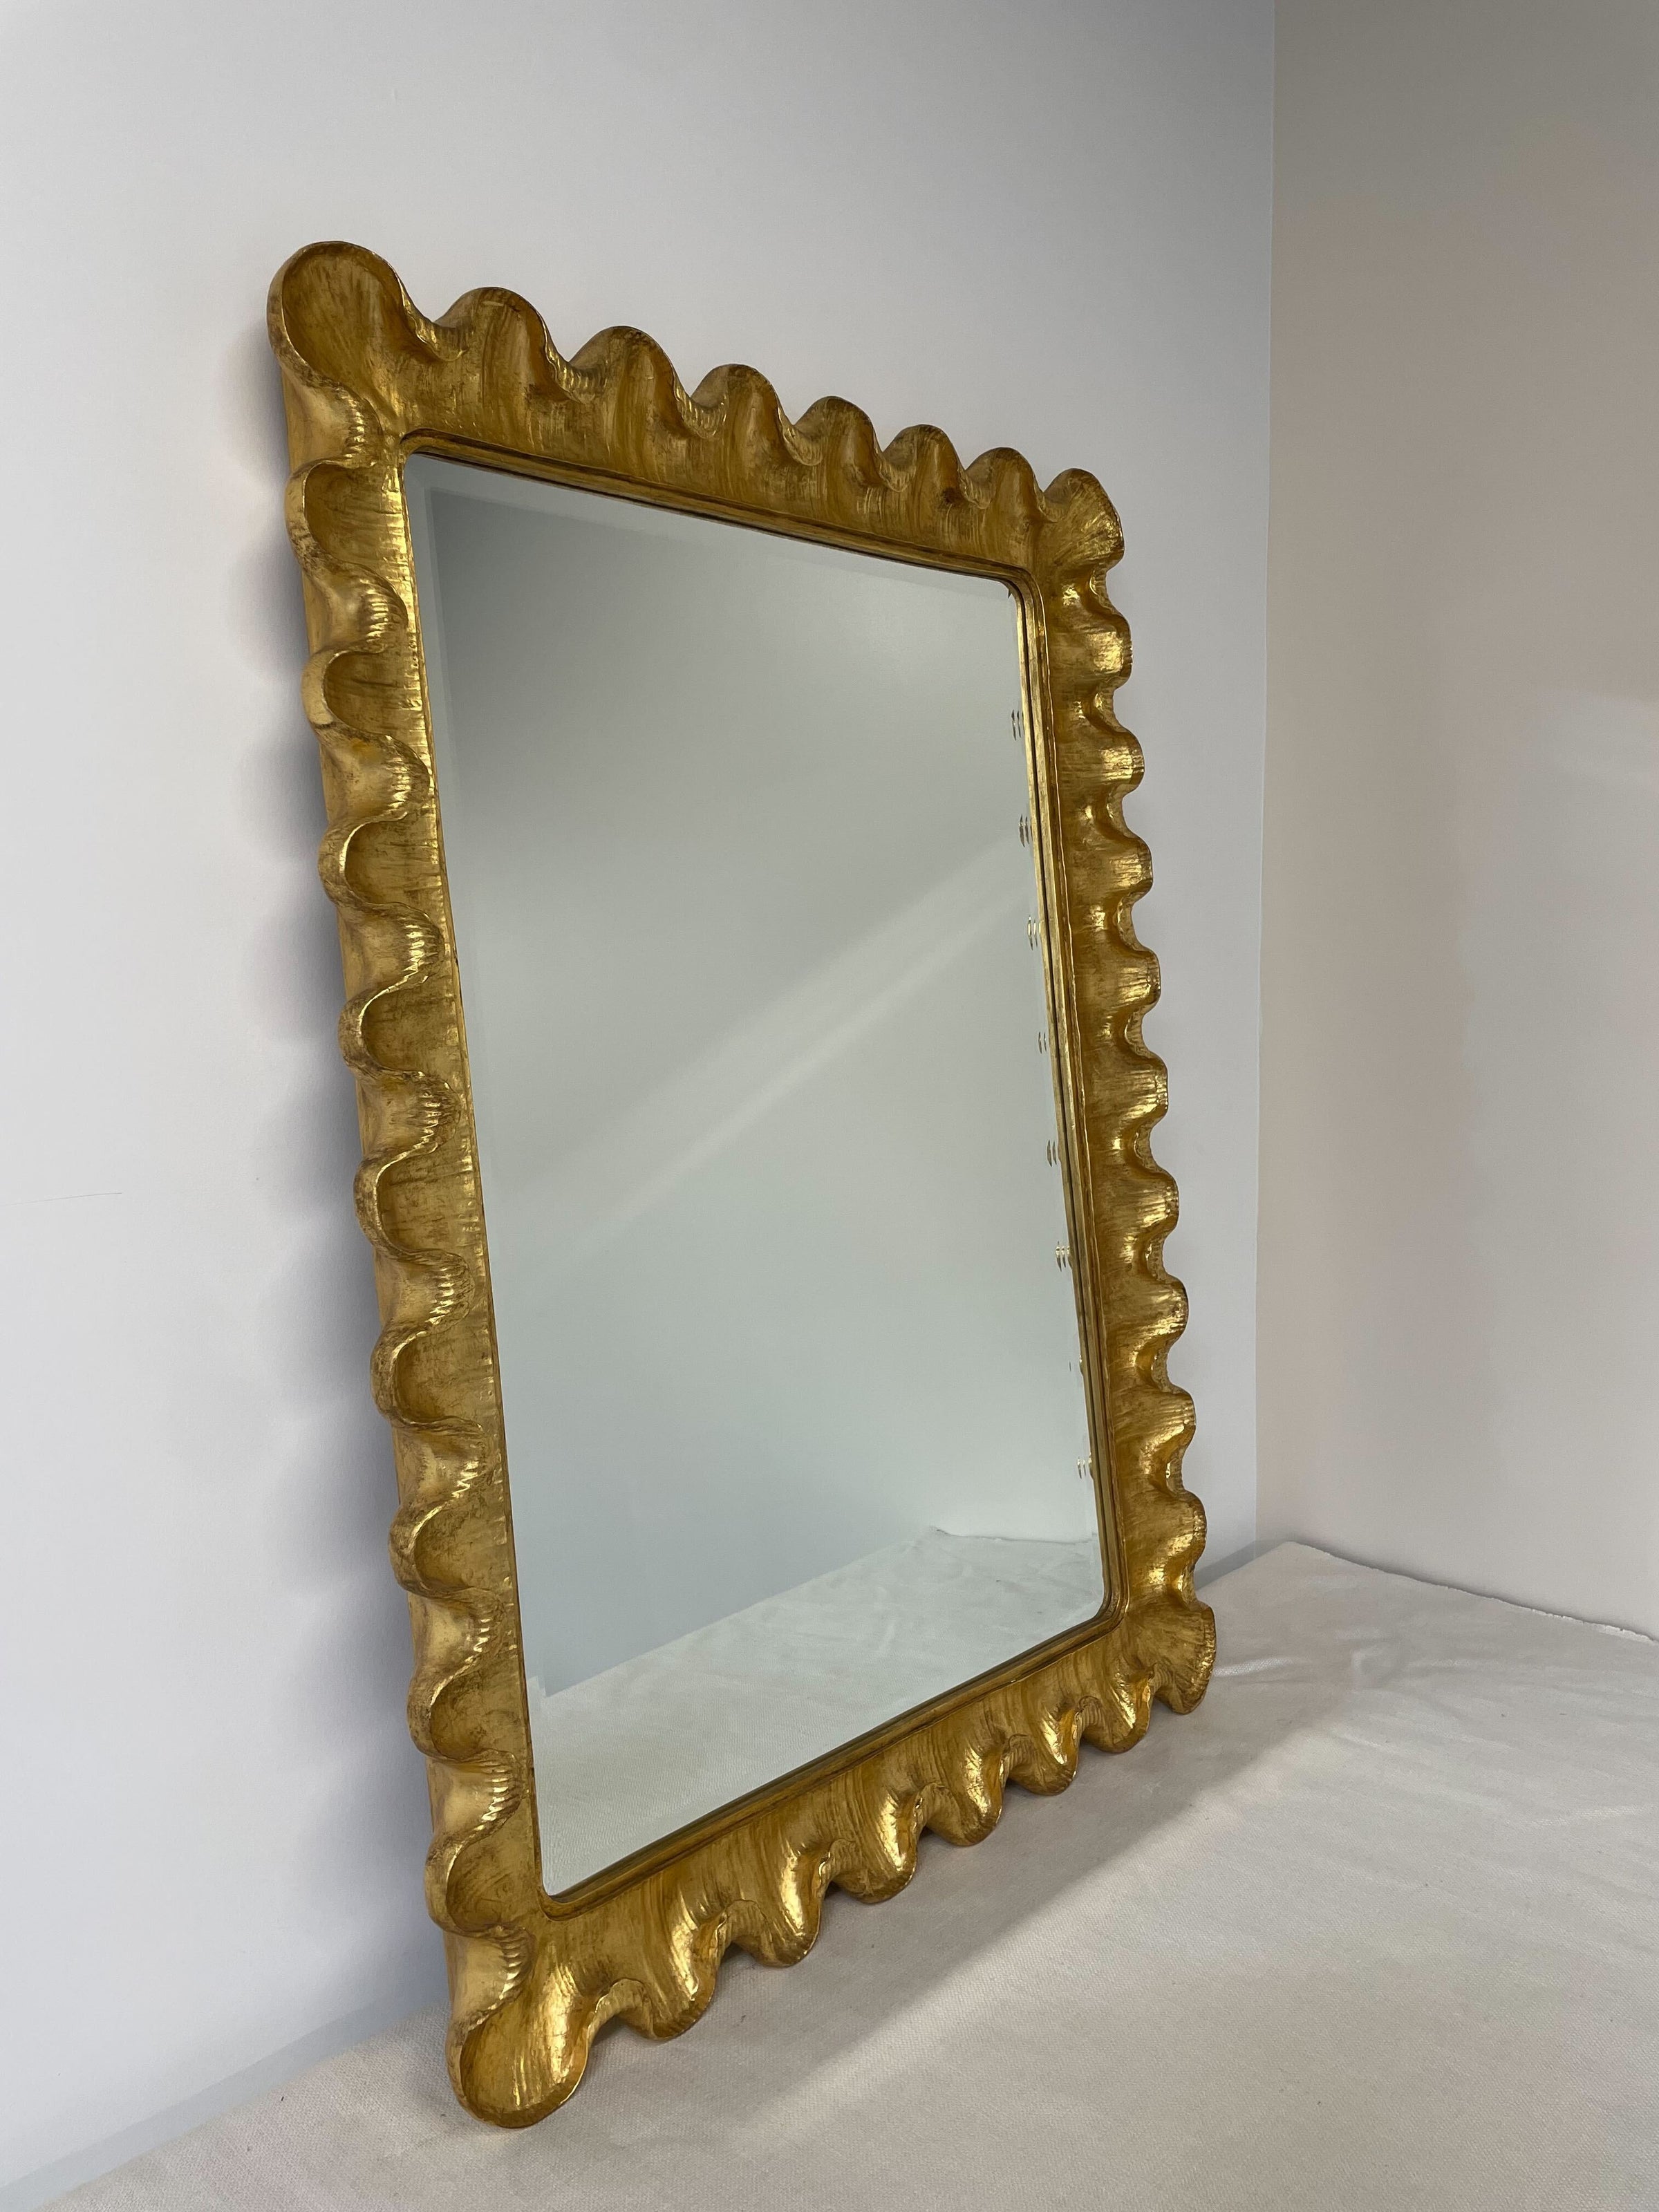 Gold Wave Mirror